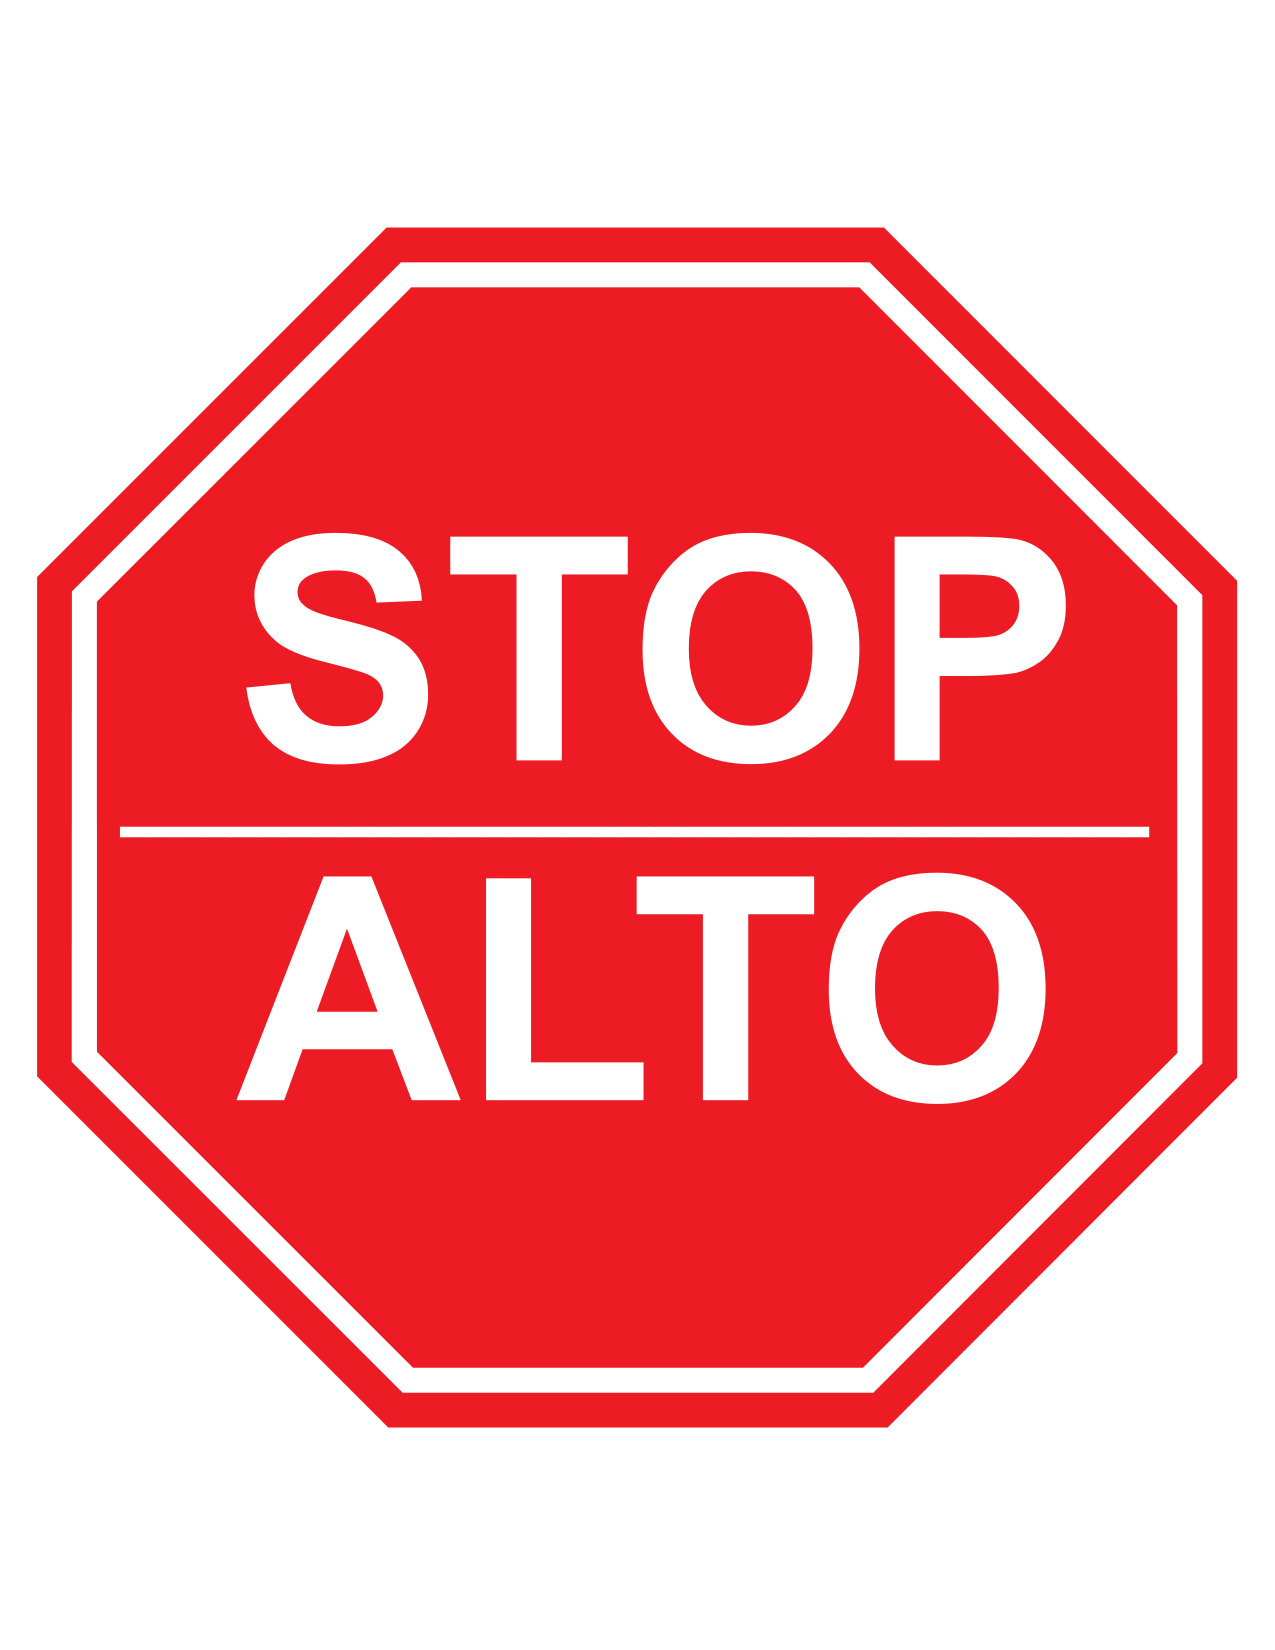 Alto Stop Sign - ClipArt Best